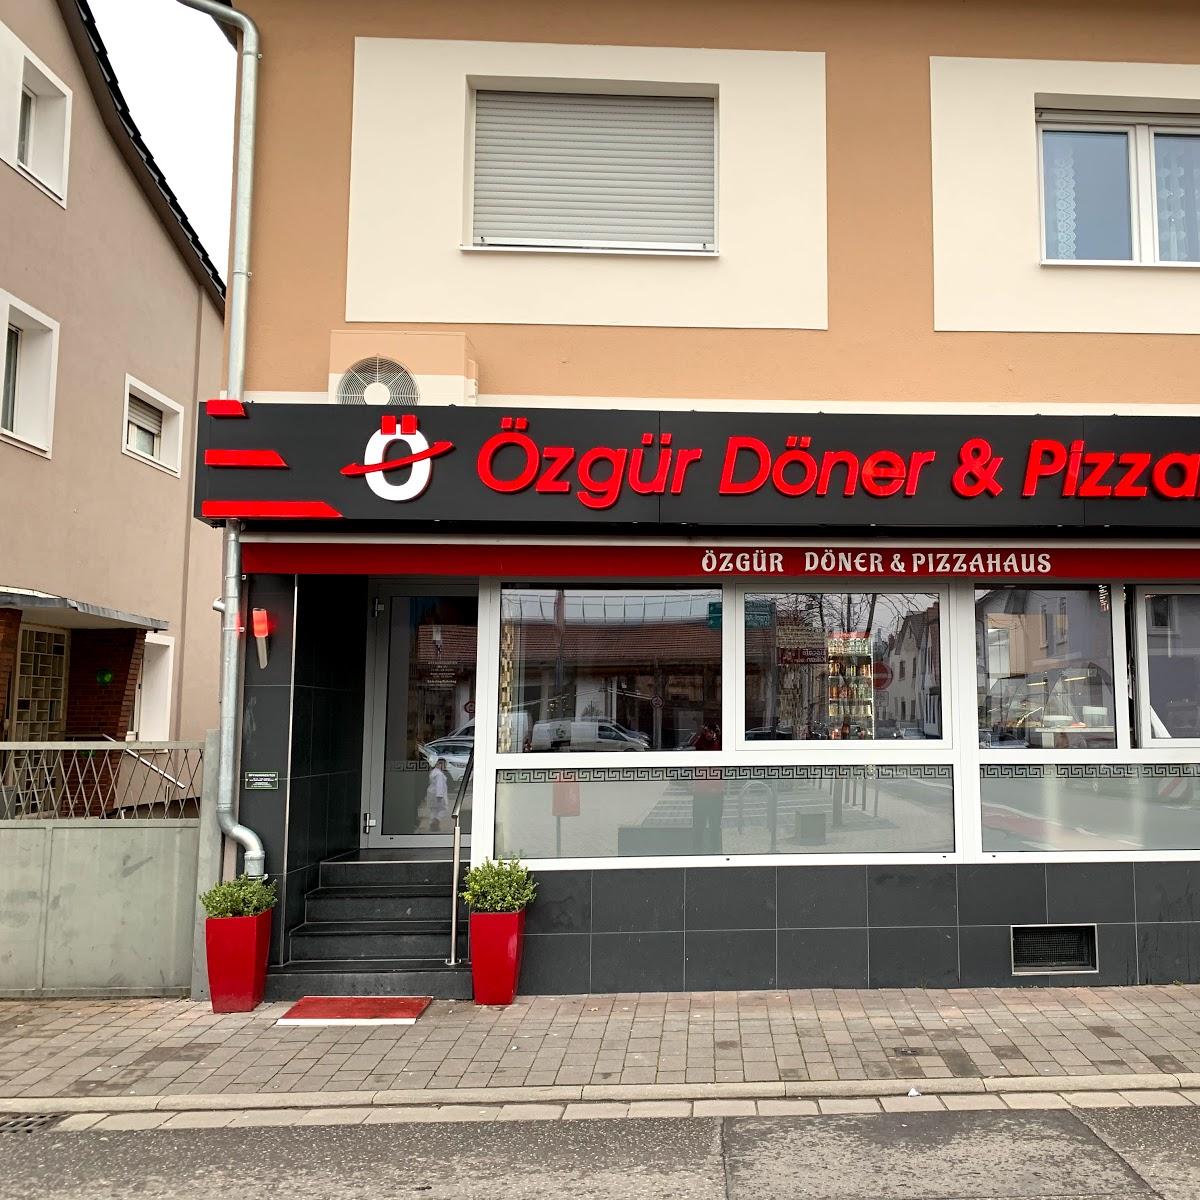 Restaurant "Özgür Döner" in Bürstadt